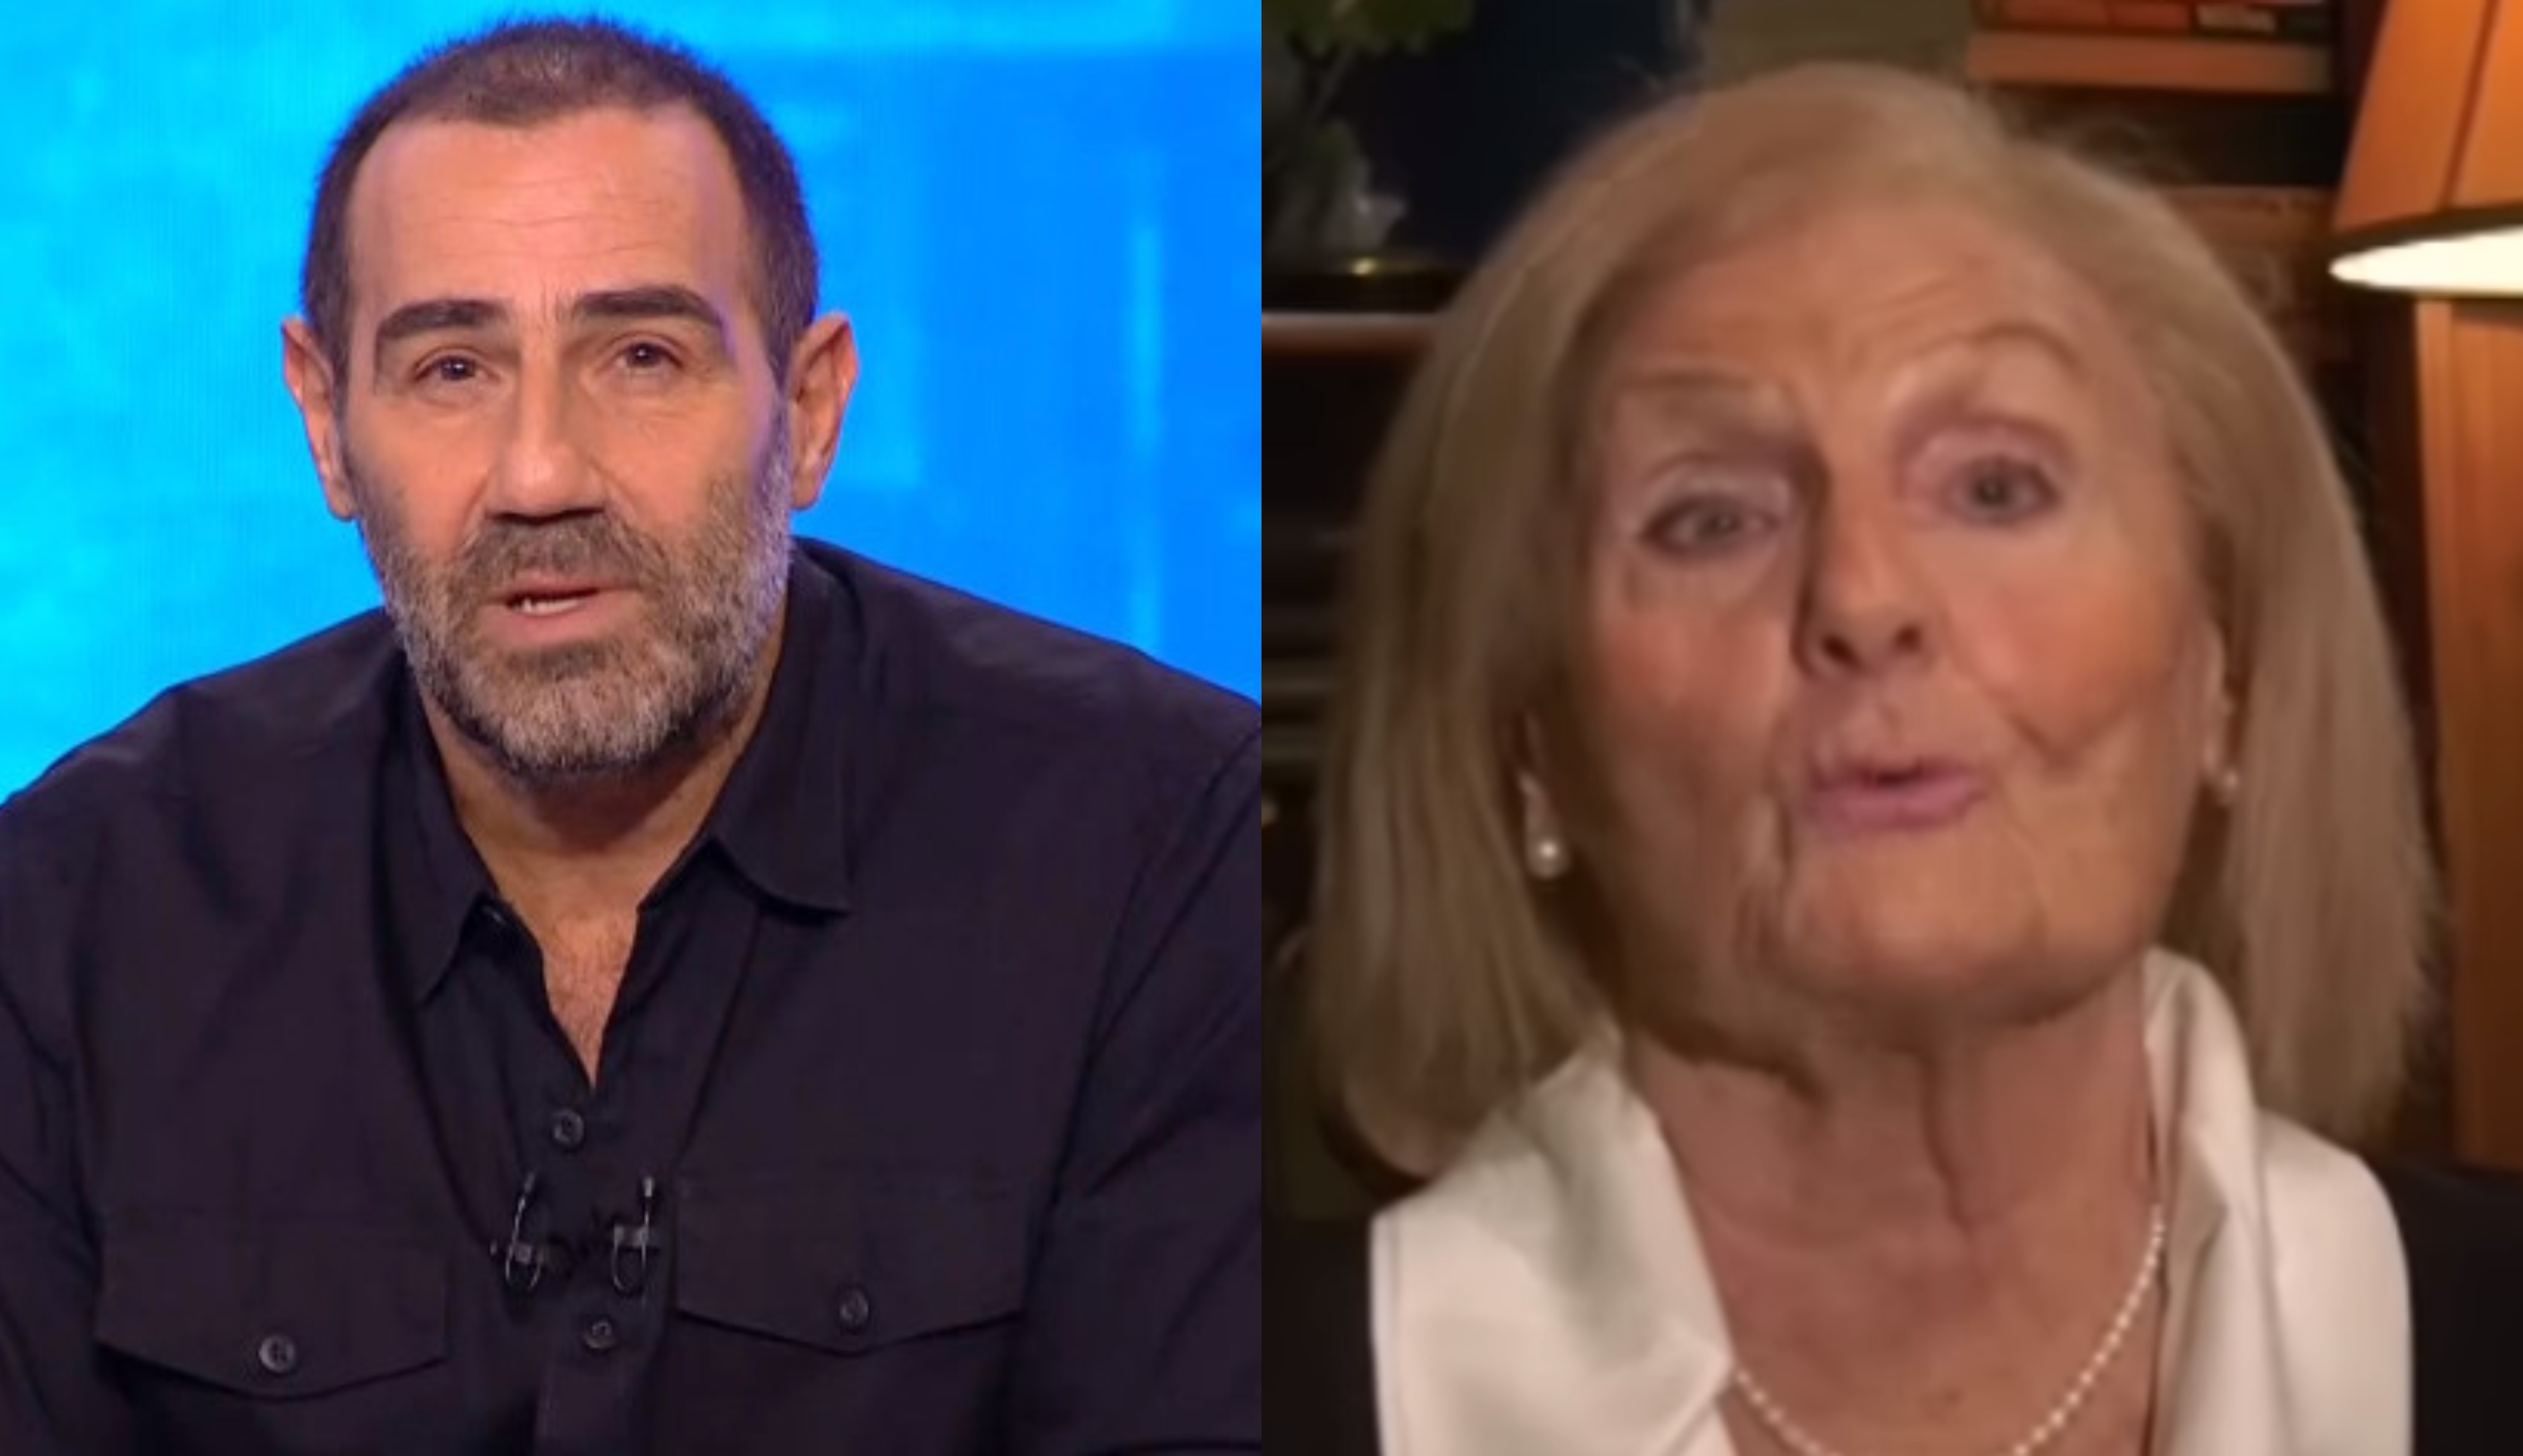 Αντώνης Κανάκης: Η μητέρα του εμφανίστηκε για πρώτη φορά στην τηλεόραση - Η συγκίνηση και το «σ' αγαπώ»